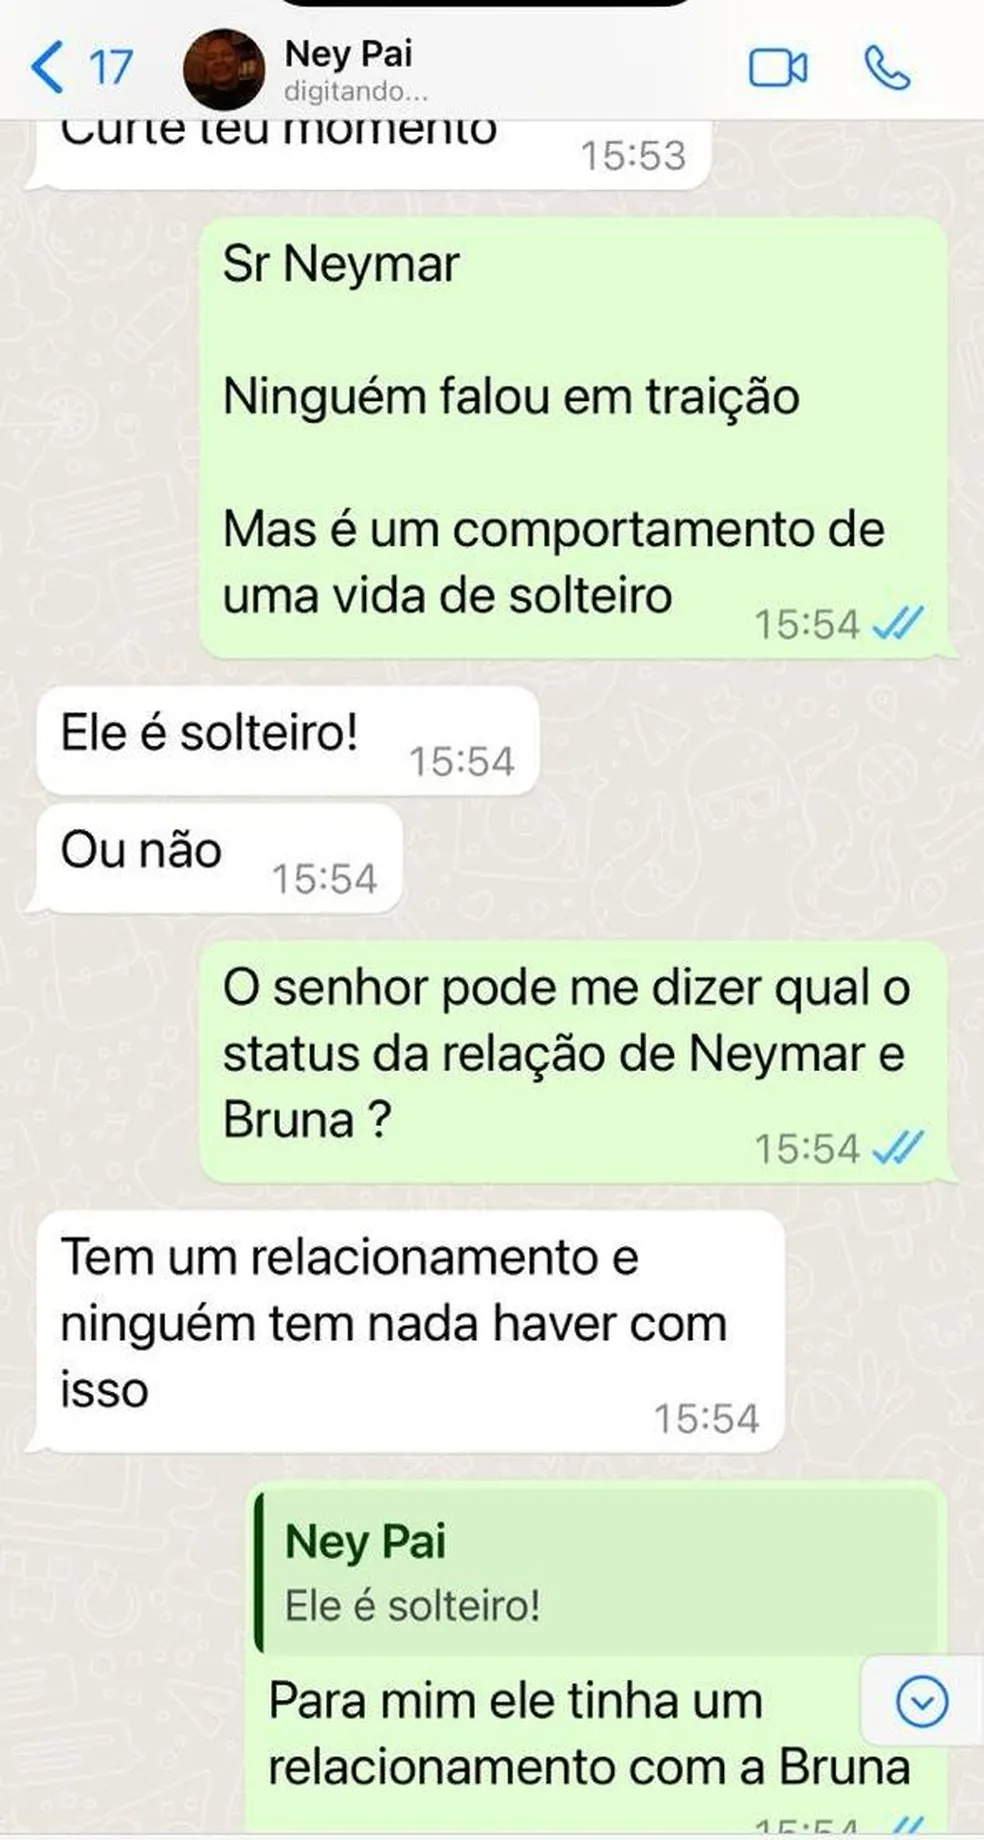 Neymar Pai disse que o filho está solteiro